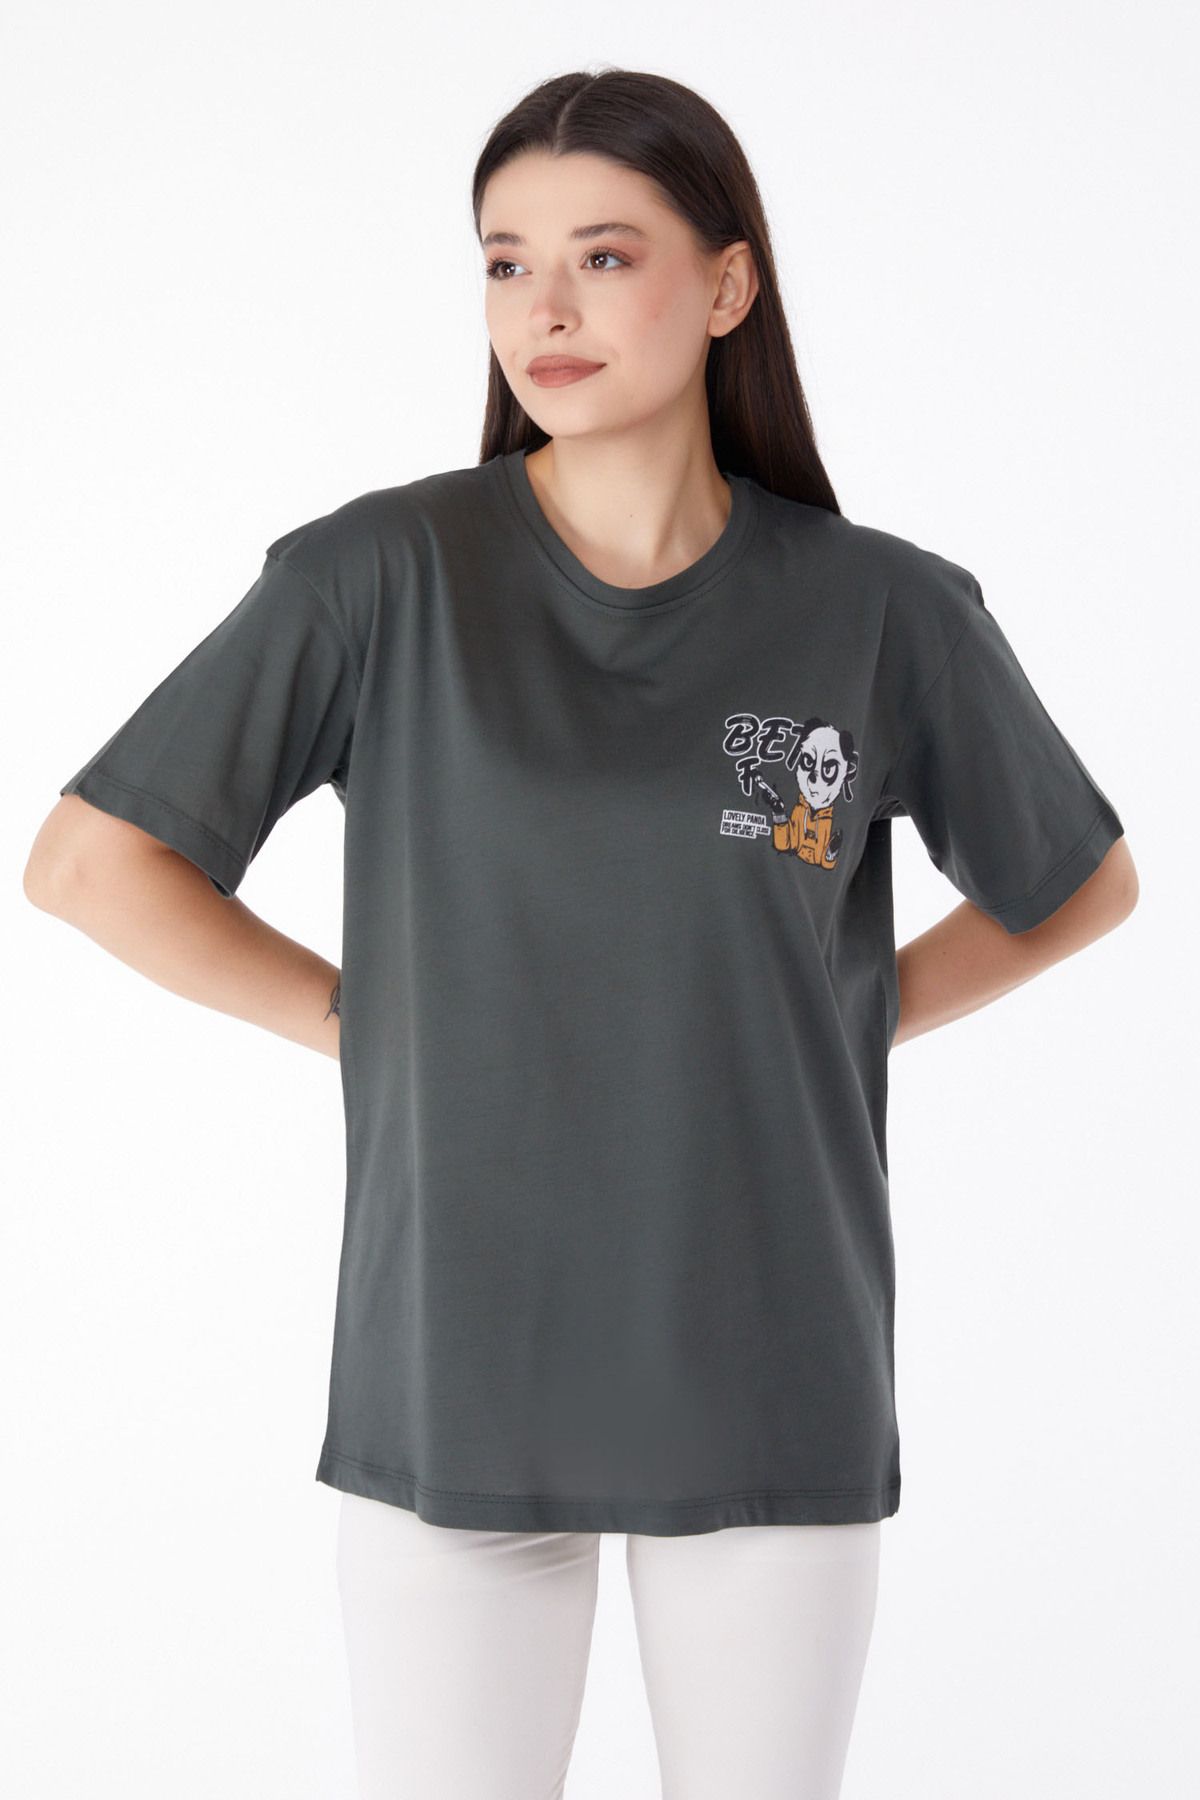 TOFİSA Düz Bisiklet Yaka Kadın Haki Baskılı T-shirt - 25286